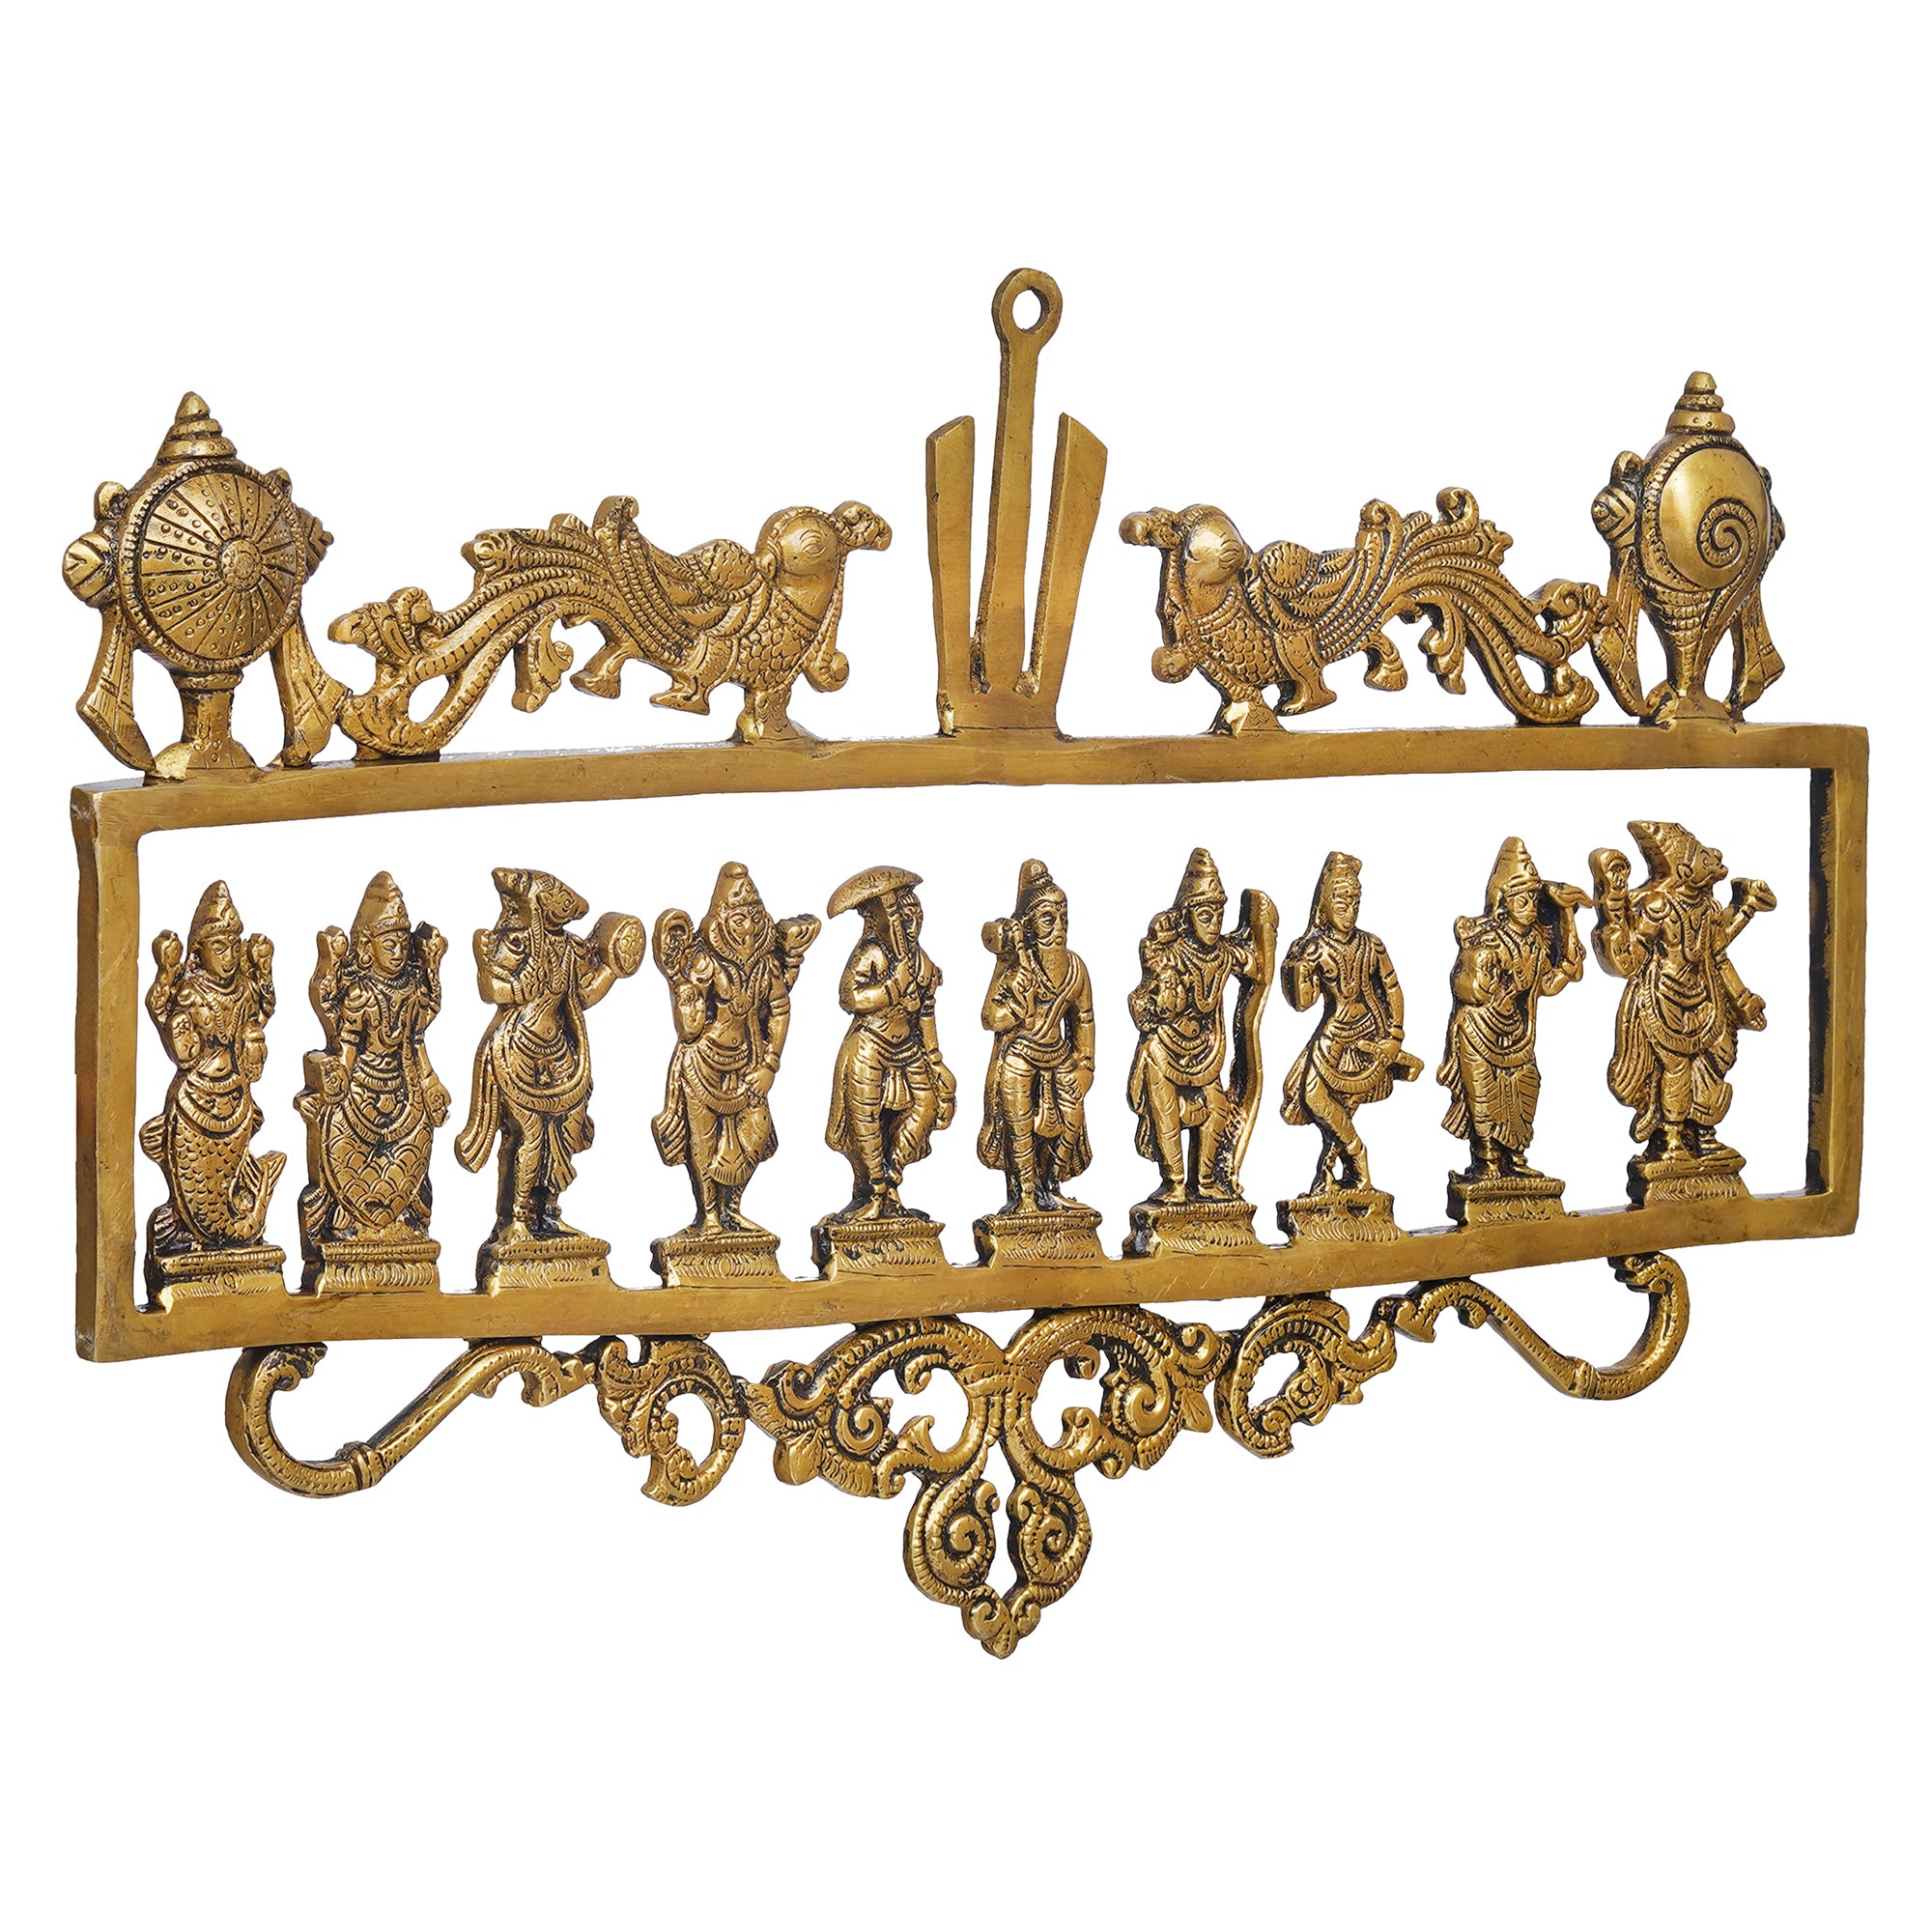 eCraftIndia Golden Brass Vishnu Dashavatara - Ten Incarnations of Lord Vishnu Religious Wall Hanging 6